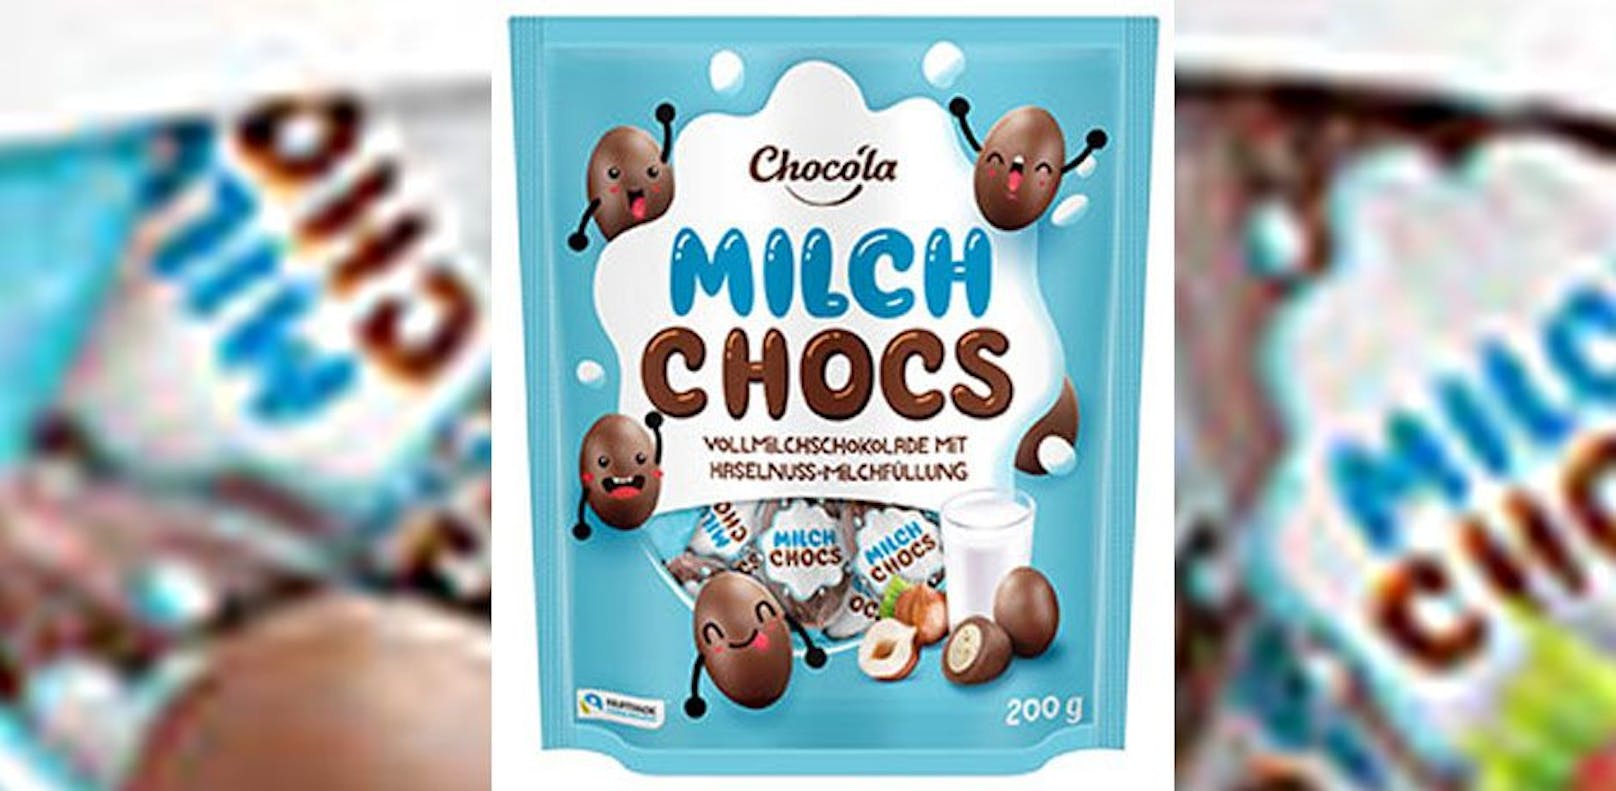 Metallteile in Schokolade – REWE ruft Produkt zurück